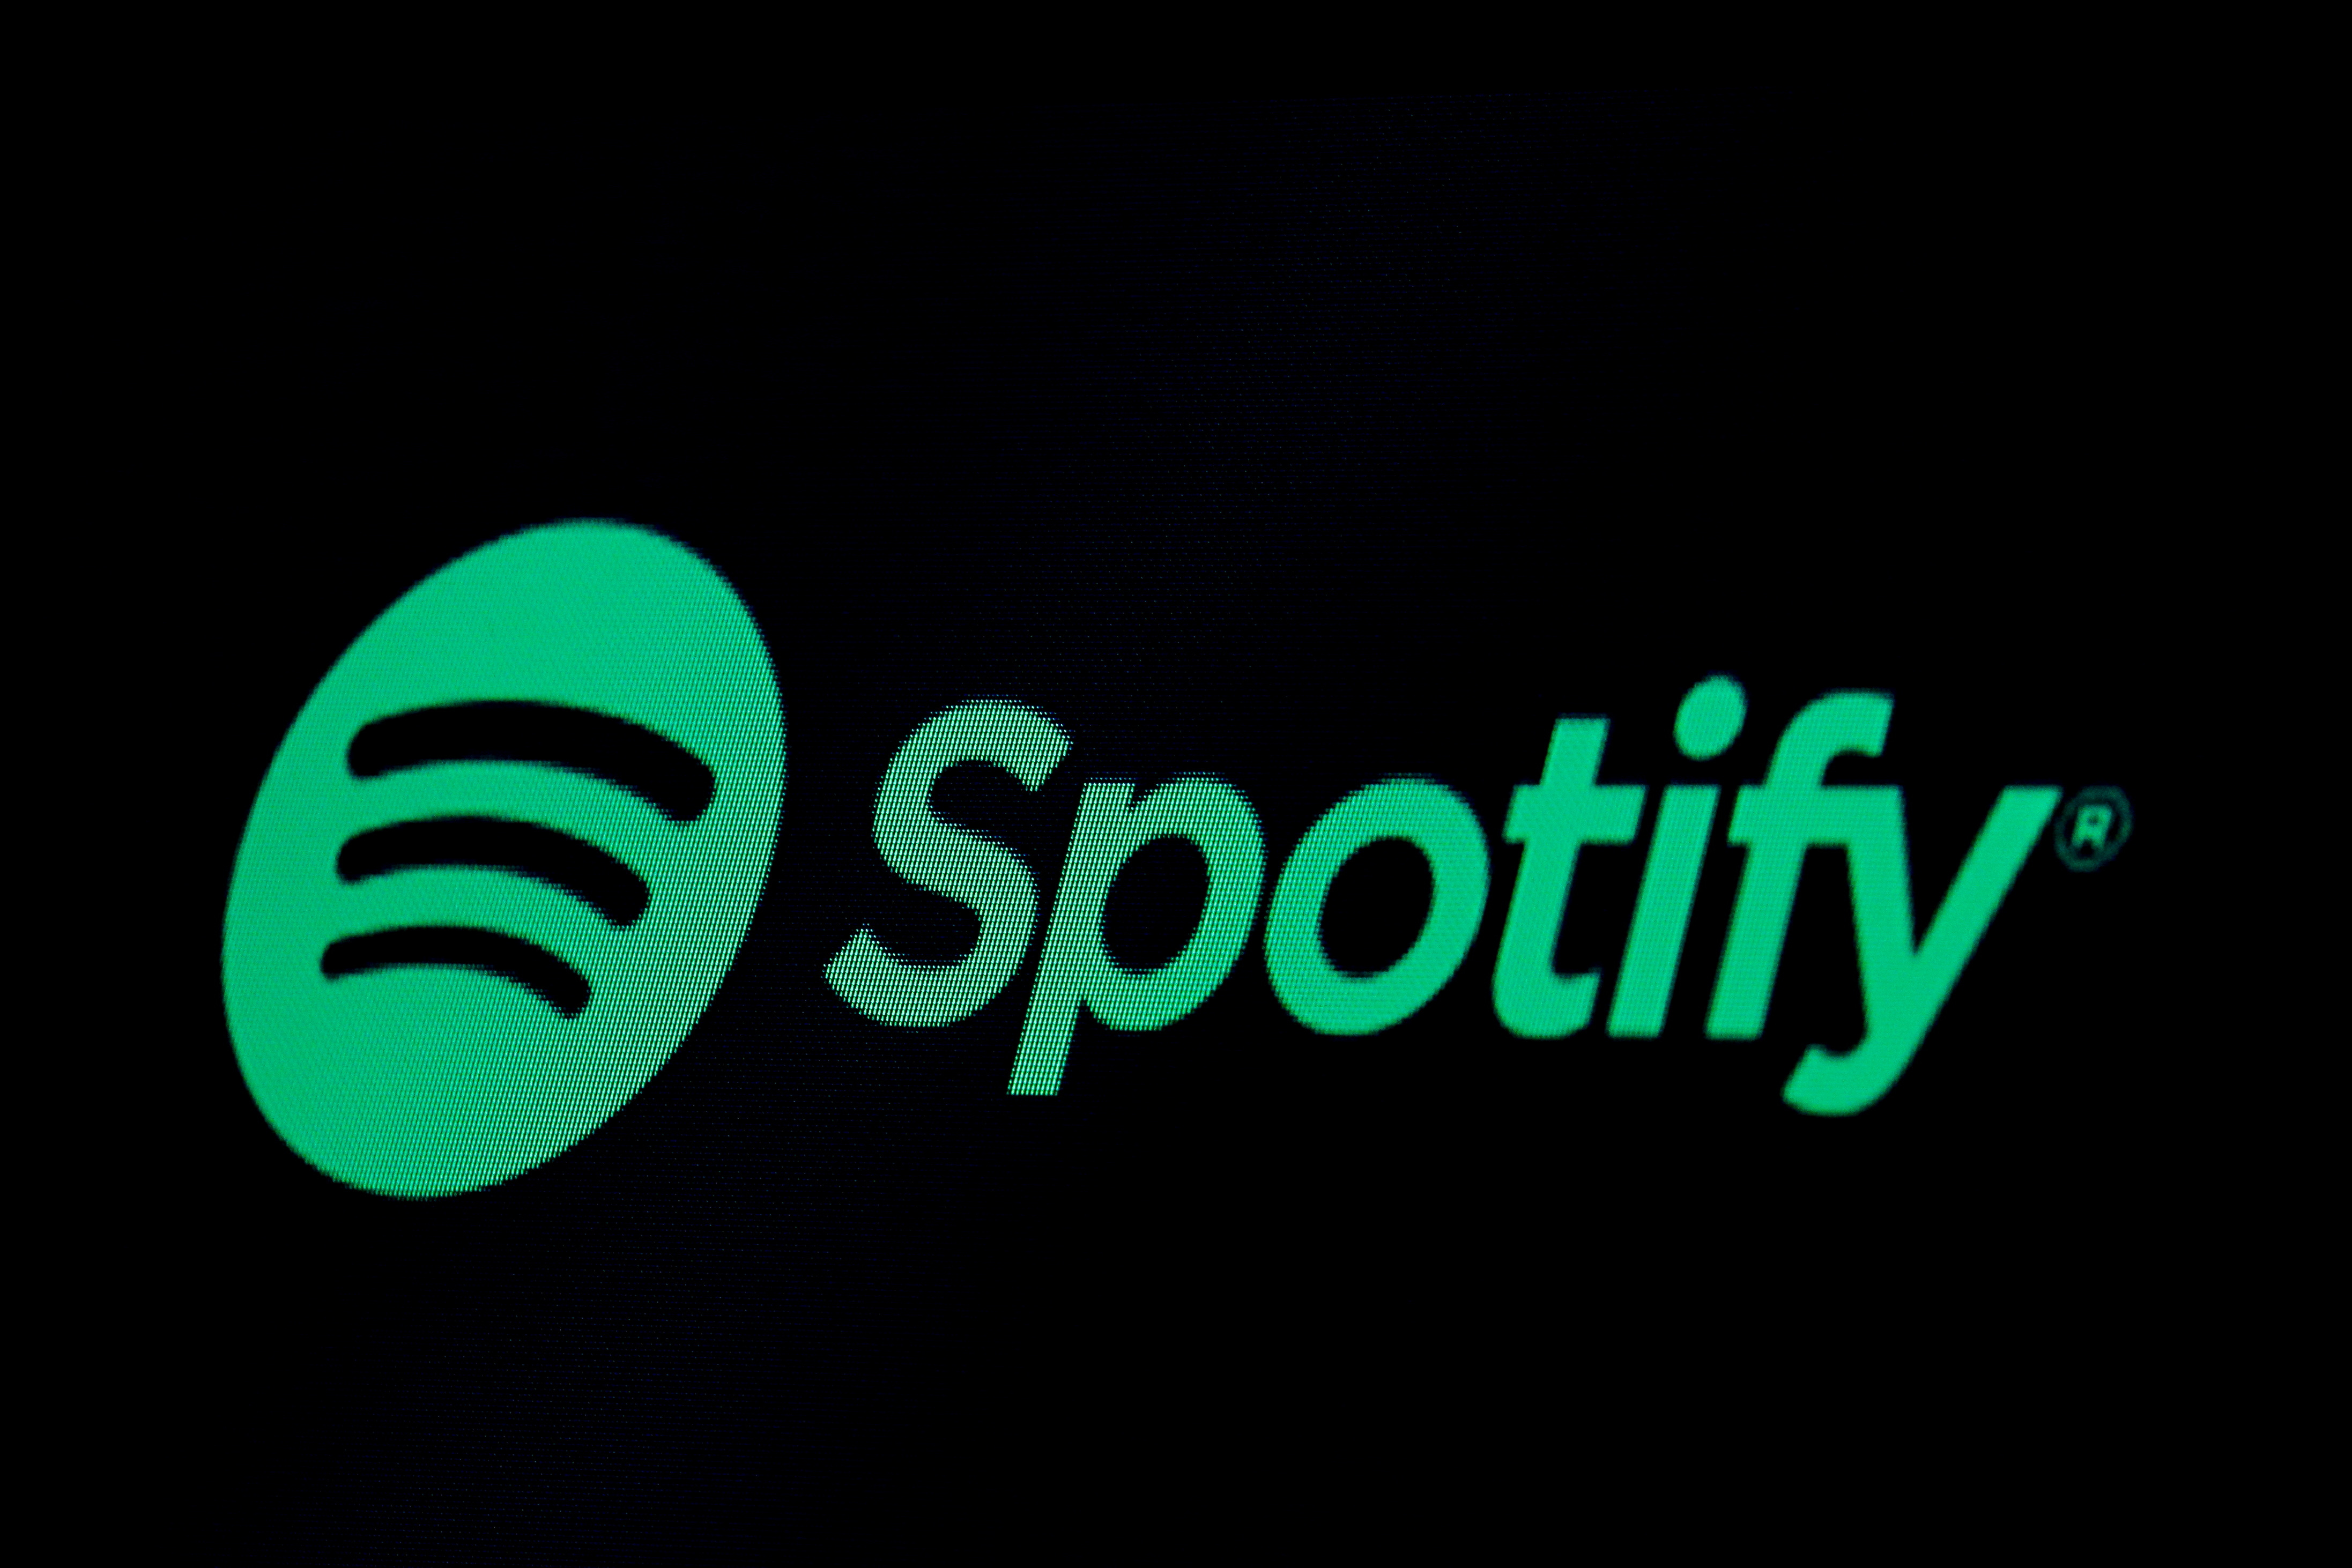 Spotify dépasse les 500 millions d'utilisateurs mais cherche toujours la rentabilité